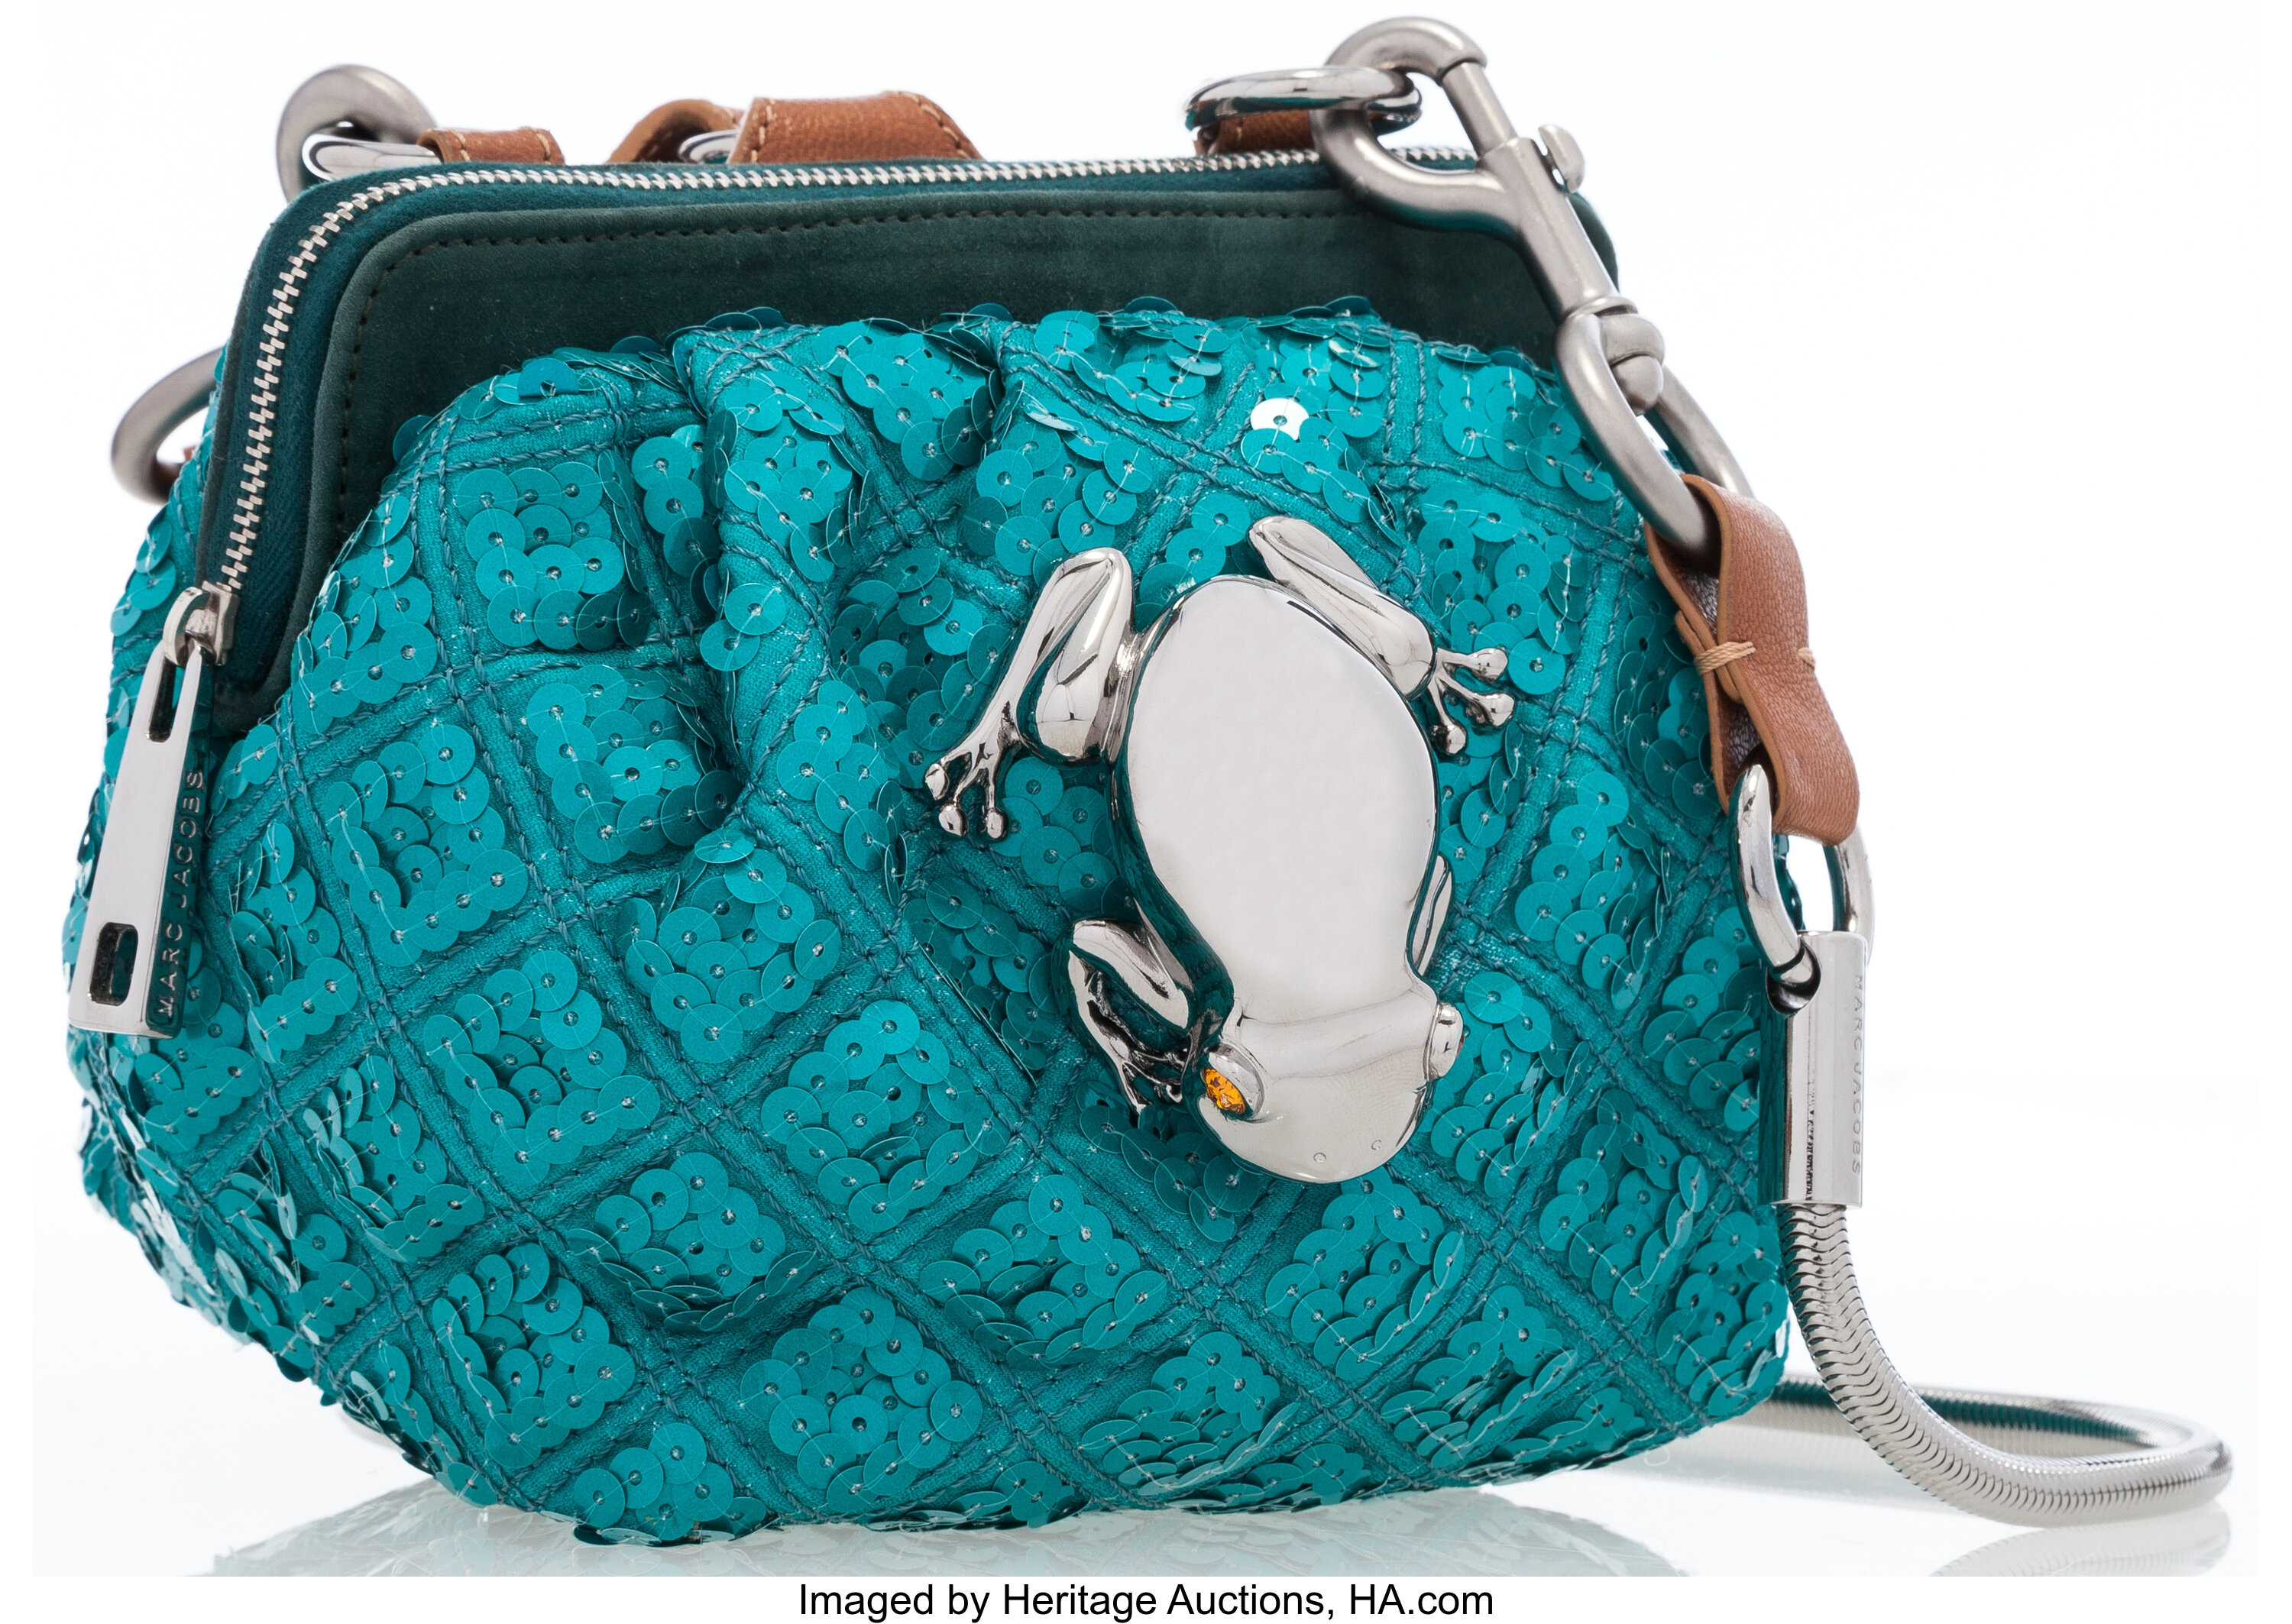 Marc Jacobs Sequin Frog Clutch Shoulder Bag